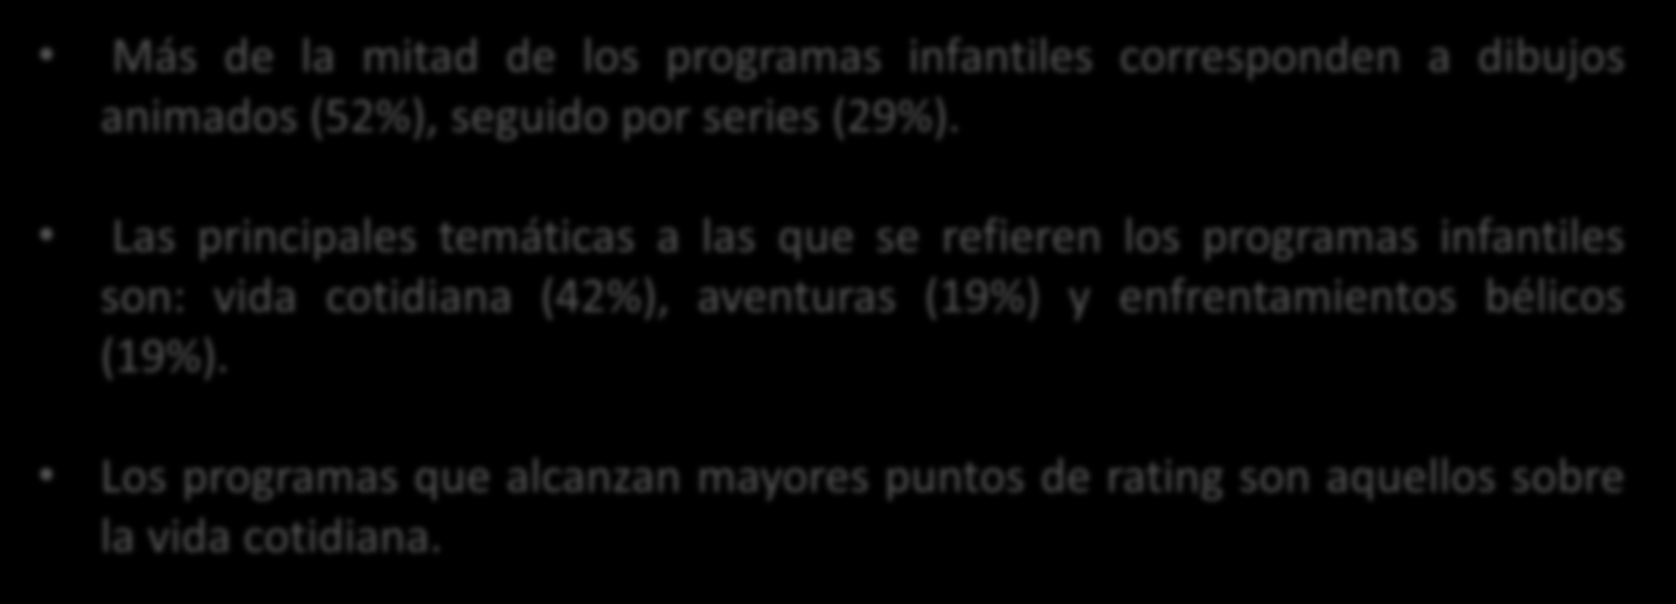 Caracterización general de la Programación Infantil de Televisión Abierta, según análisis de pantalla 2012 Más de la mitad de los programas infantiles corresponden a dibujos animados (52%), seguido